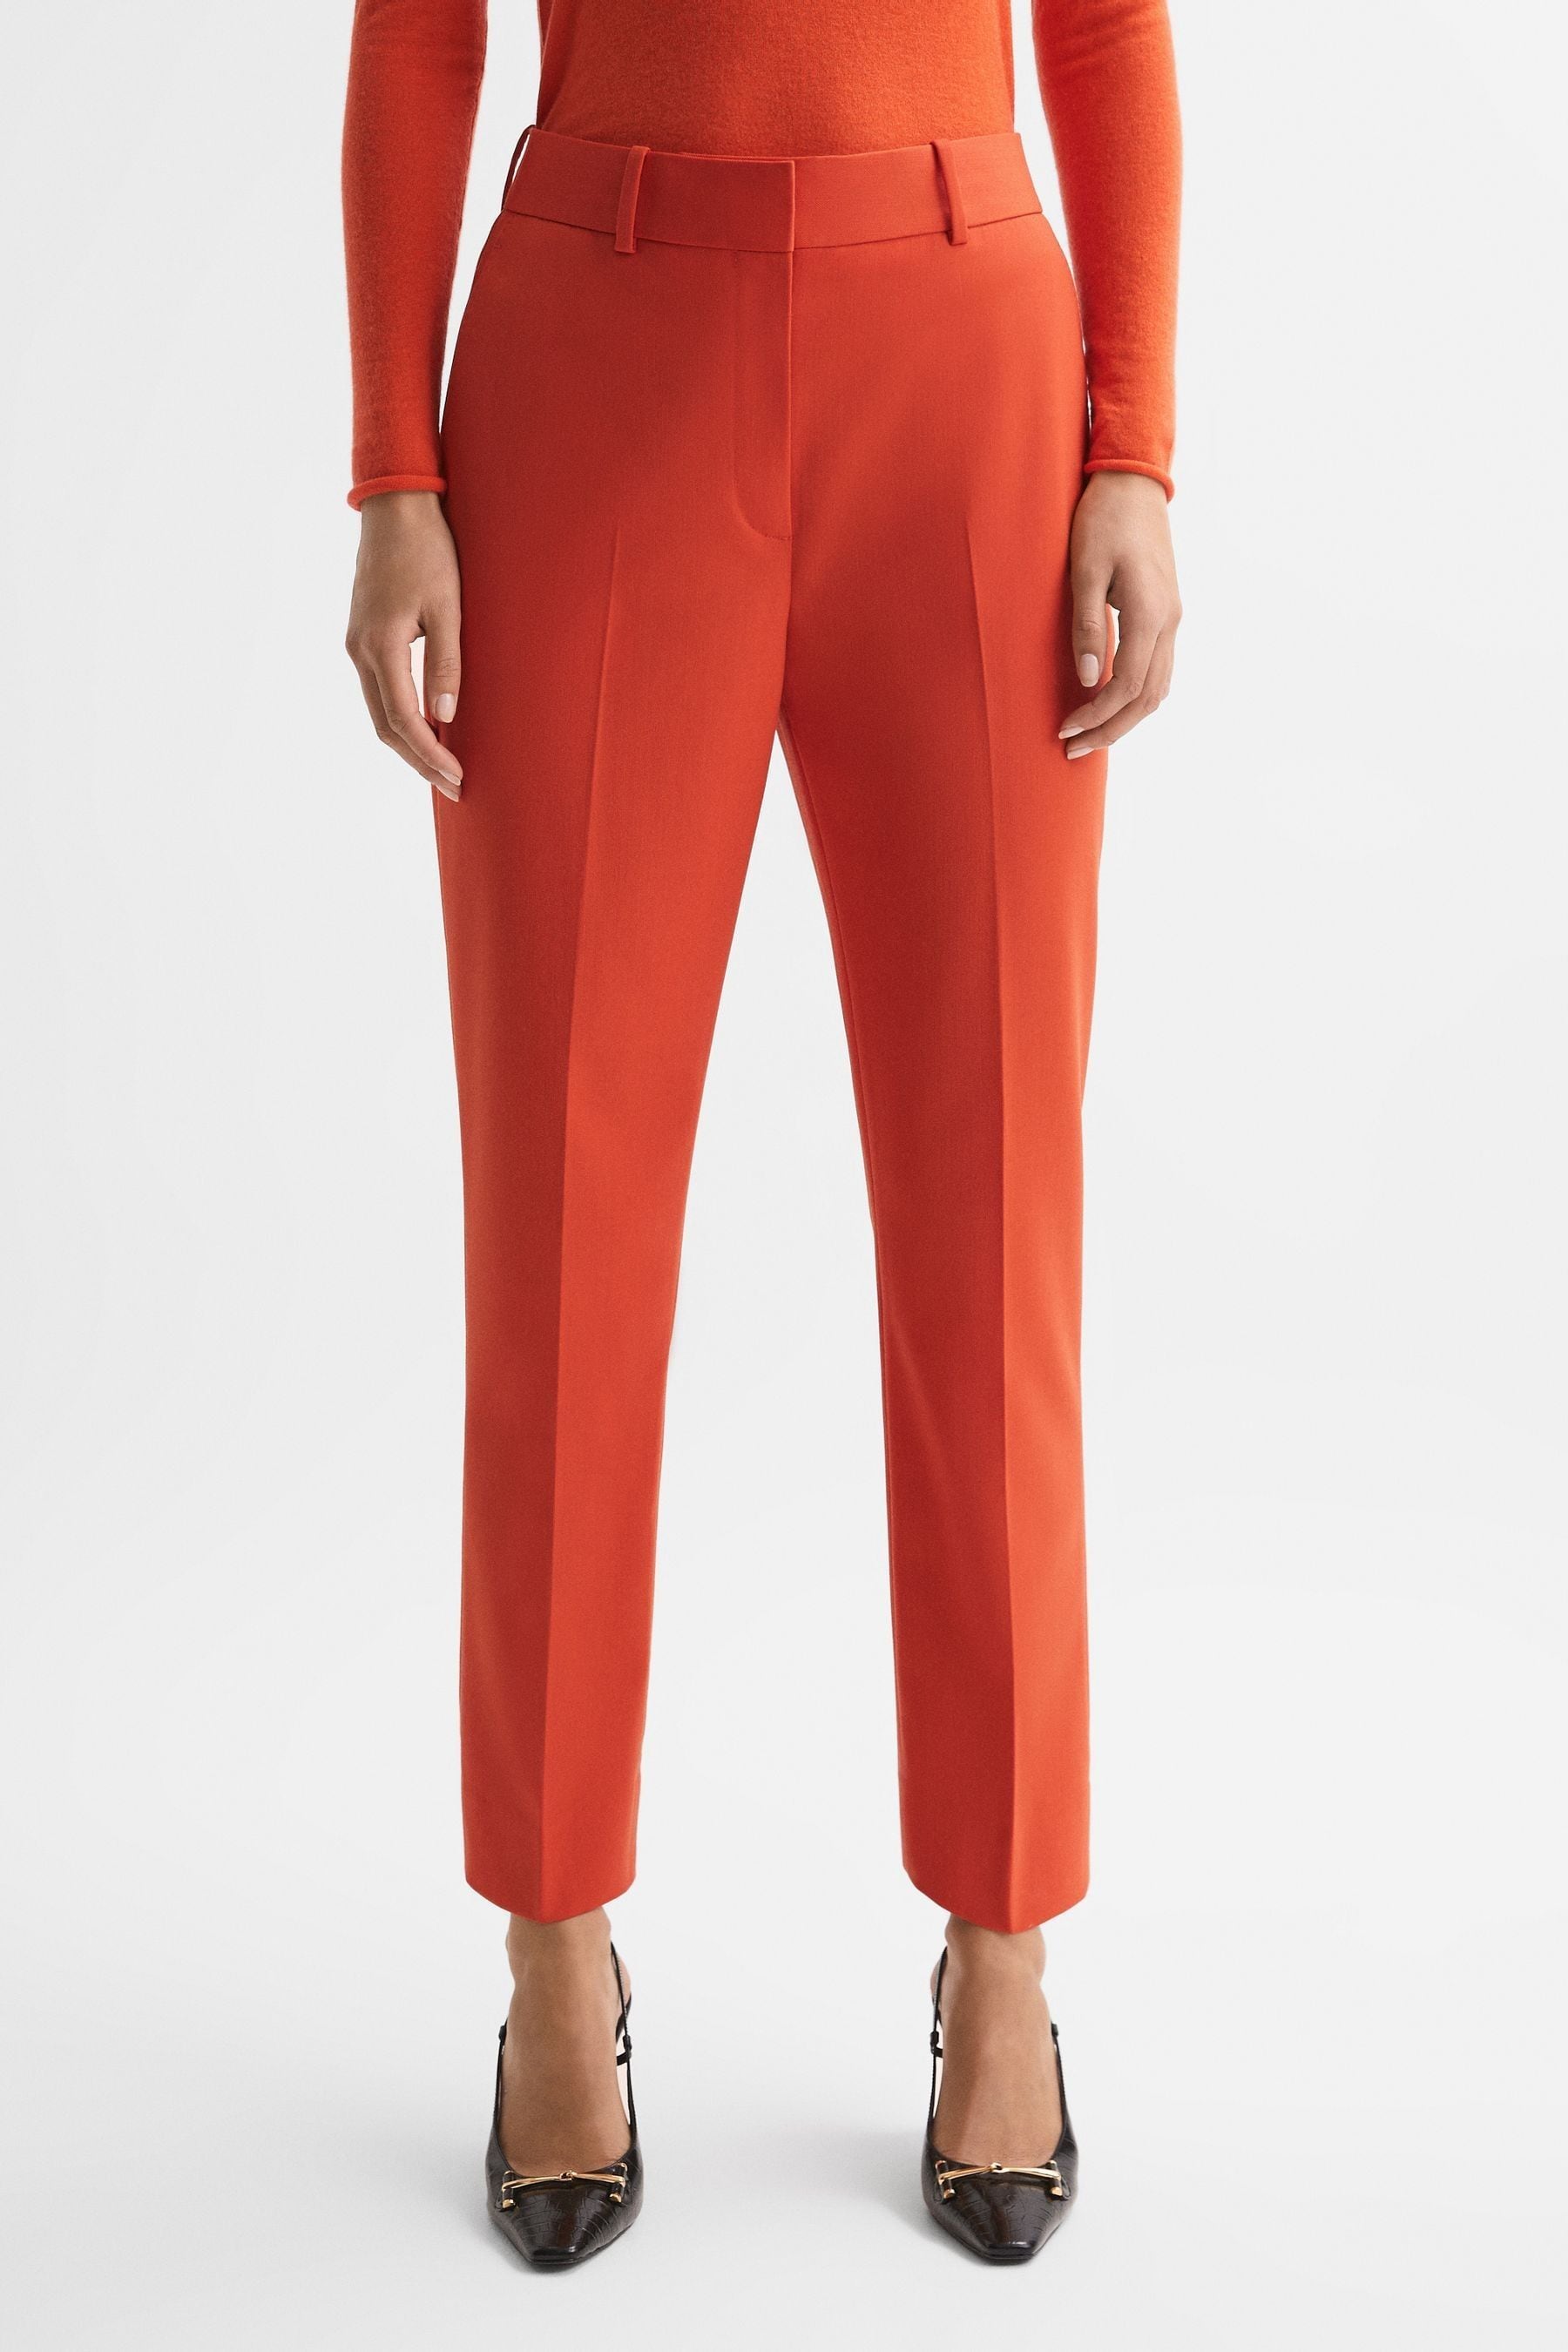 Reiss Celia - Orange Slim Fit Wool Blend Suit Trousers, Us 0